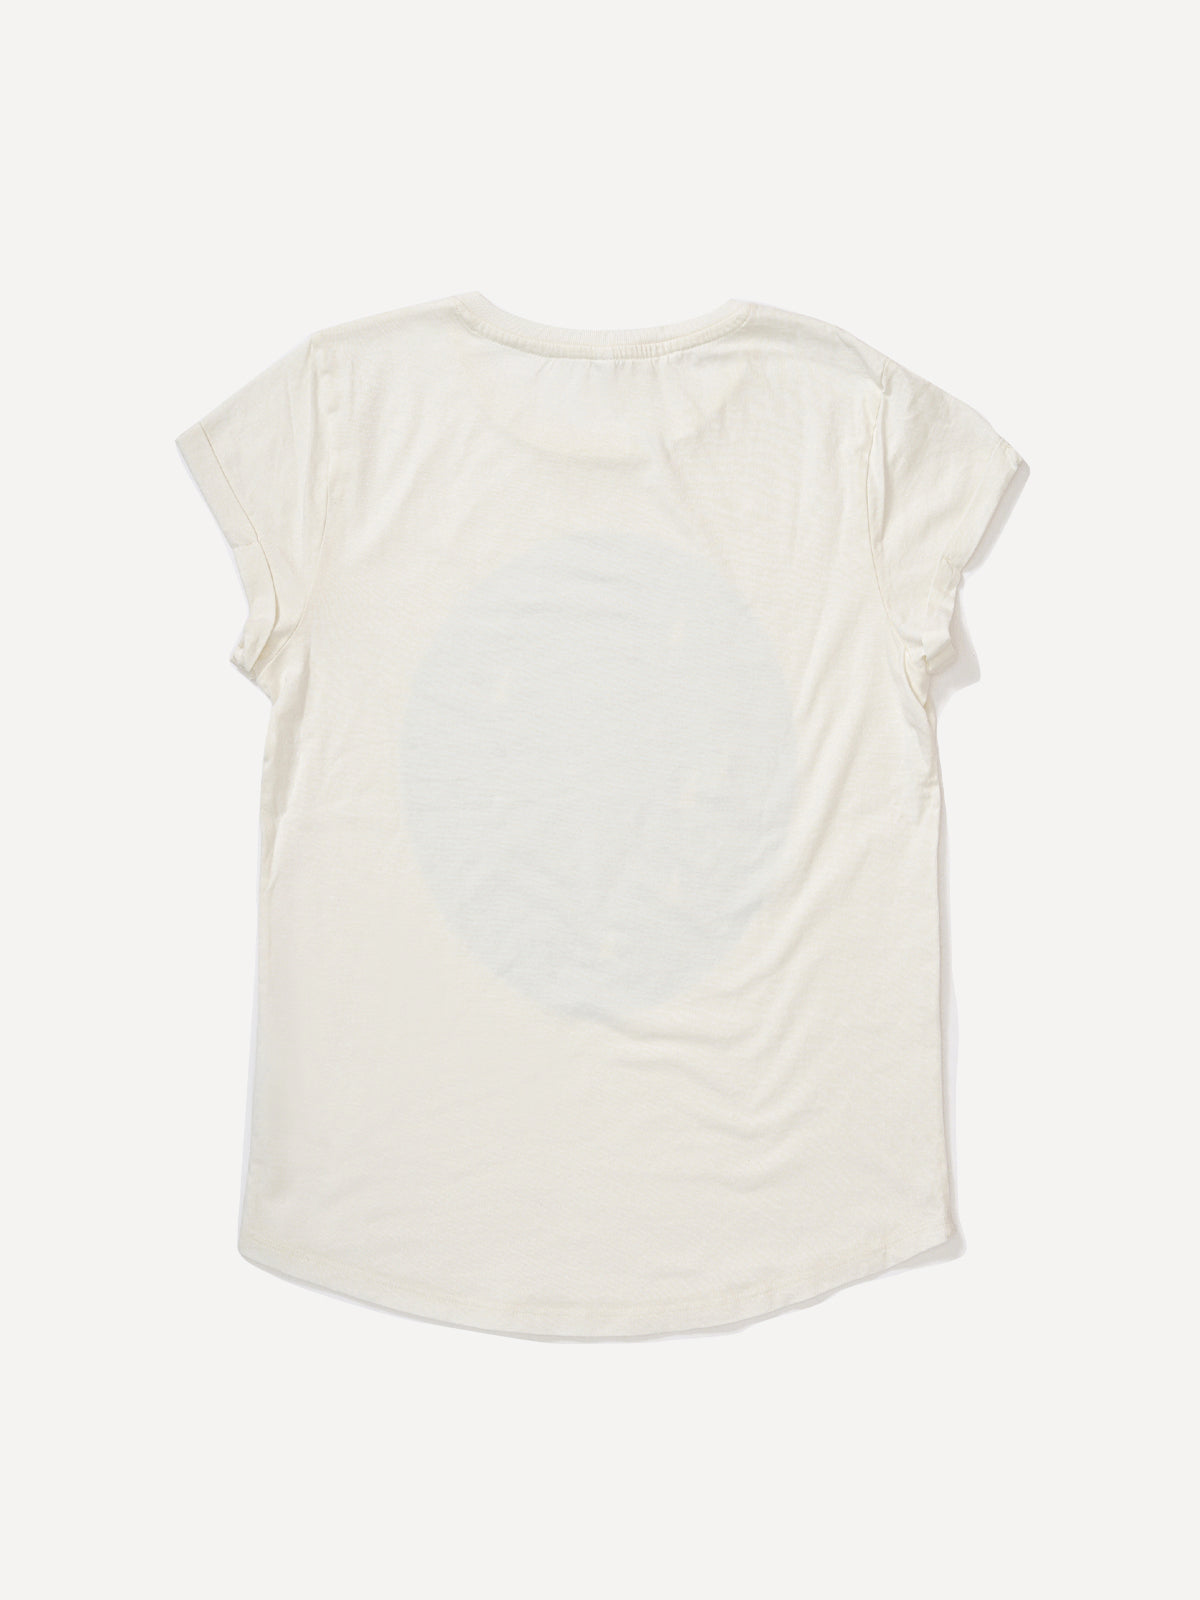 White women's t-shirt with Balaton pattern